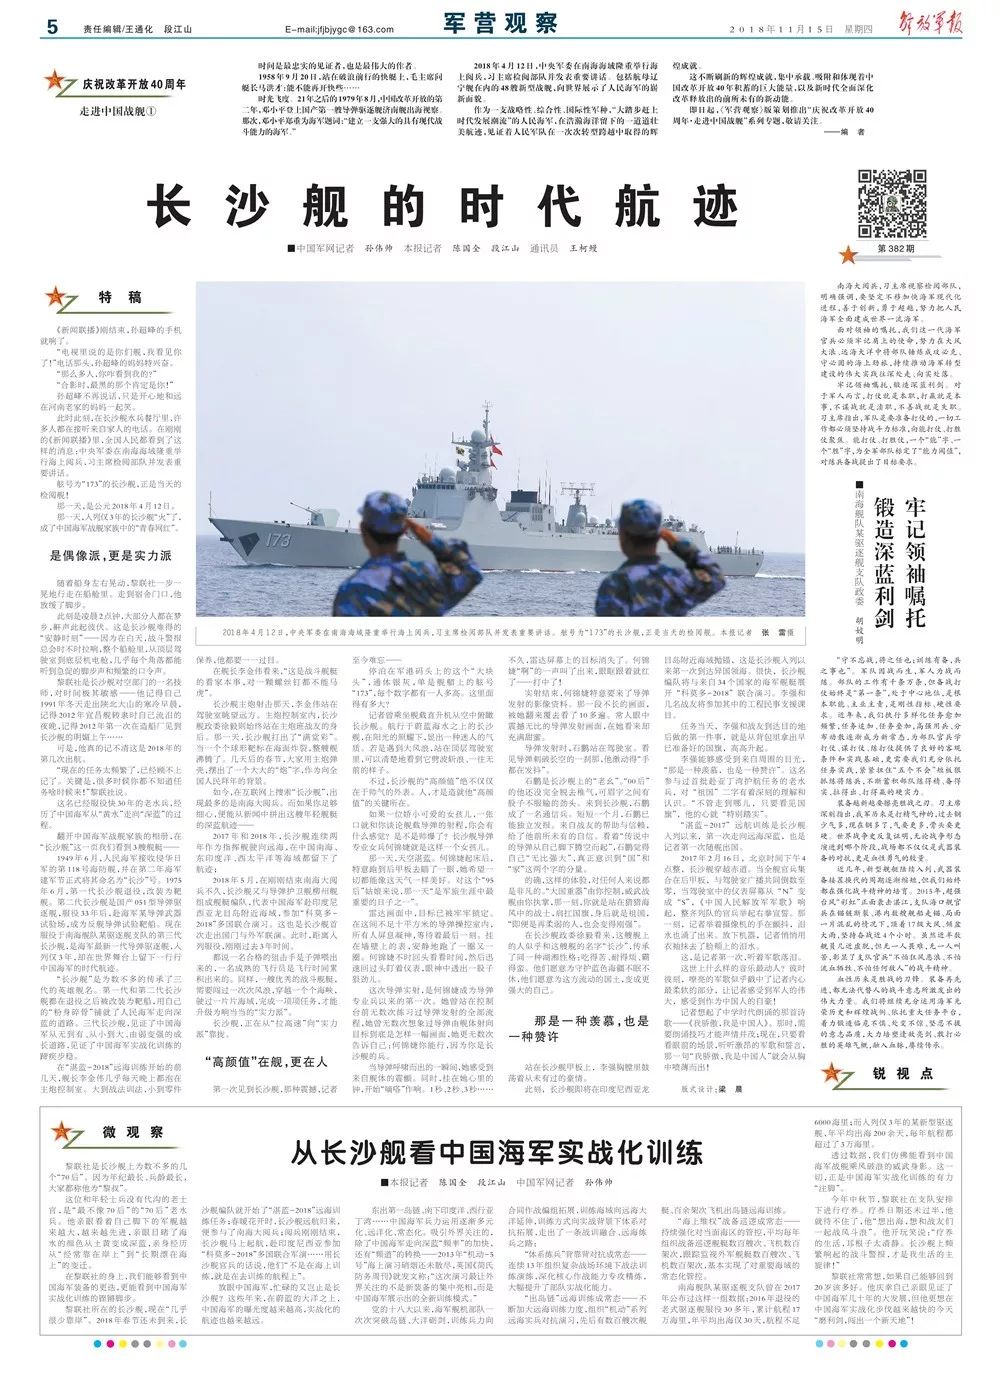 解放军报推出“庆祝改革开放40周年”海军系列专题报道